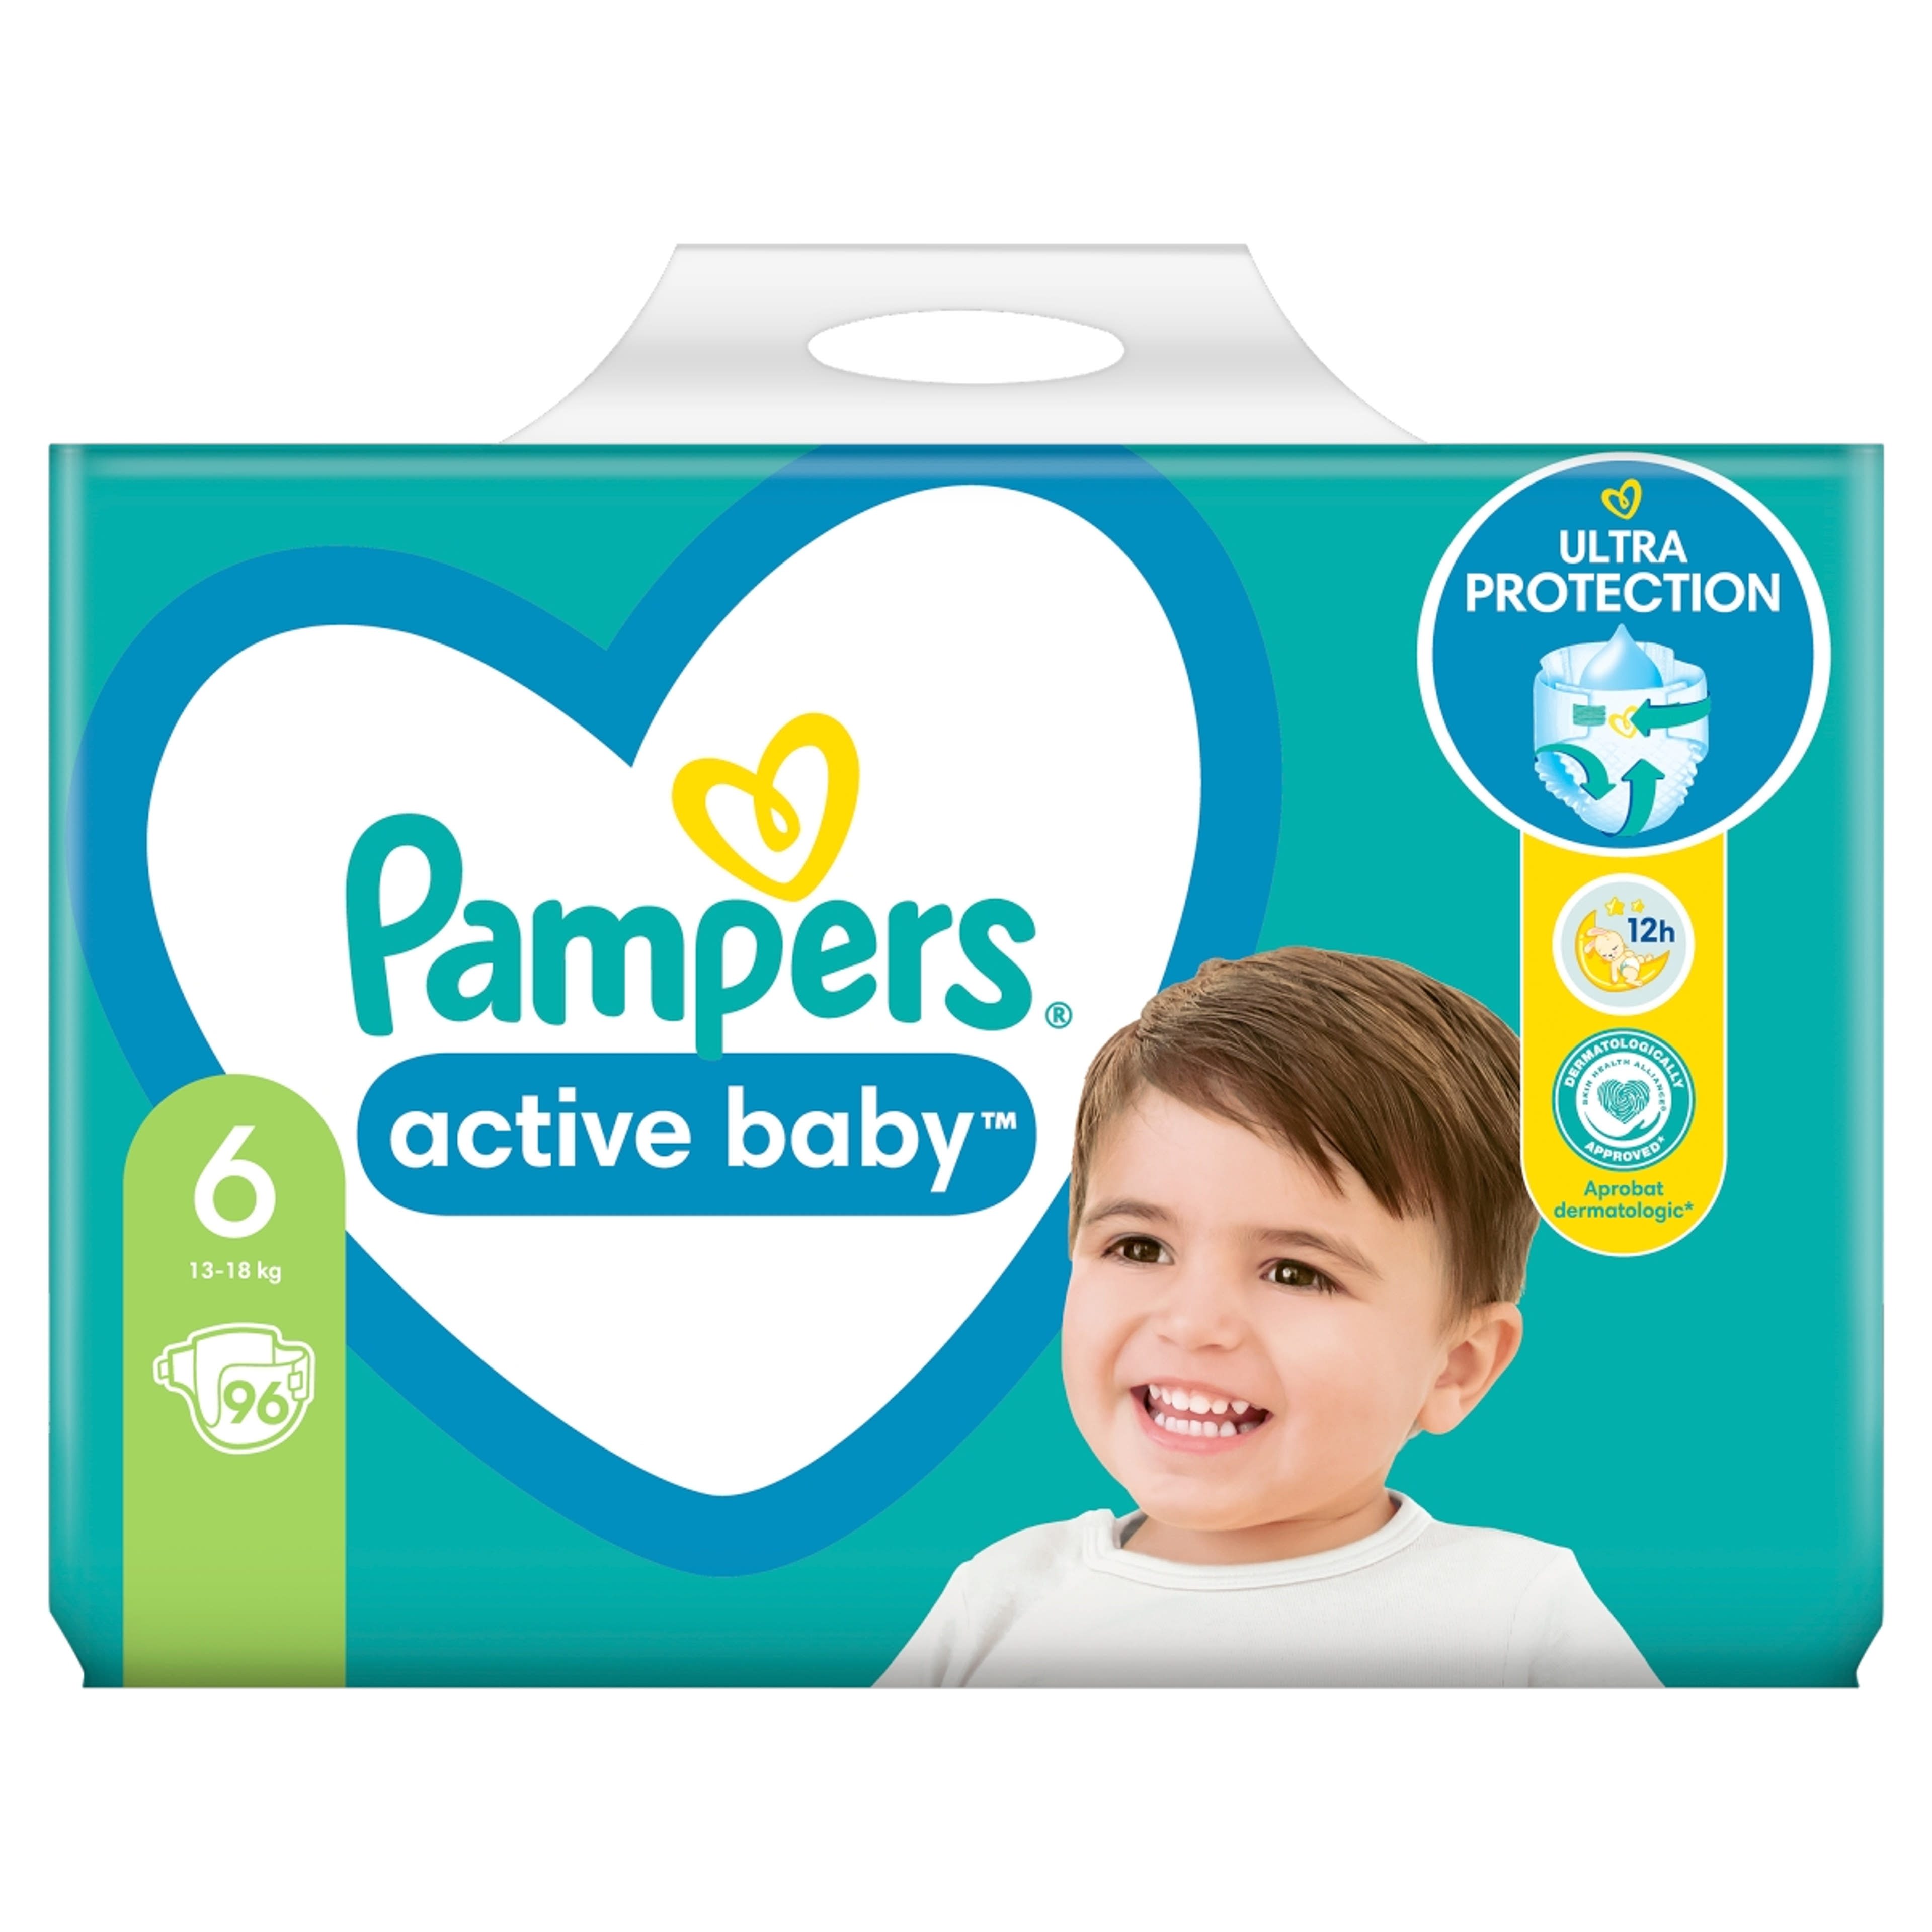 Pampers active baby mega pack+ 6-os 13-18kg - 96 db-1